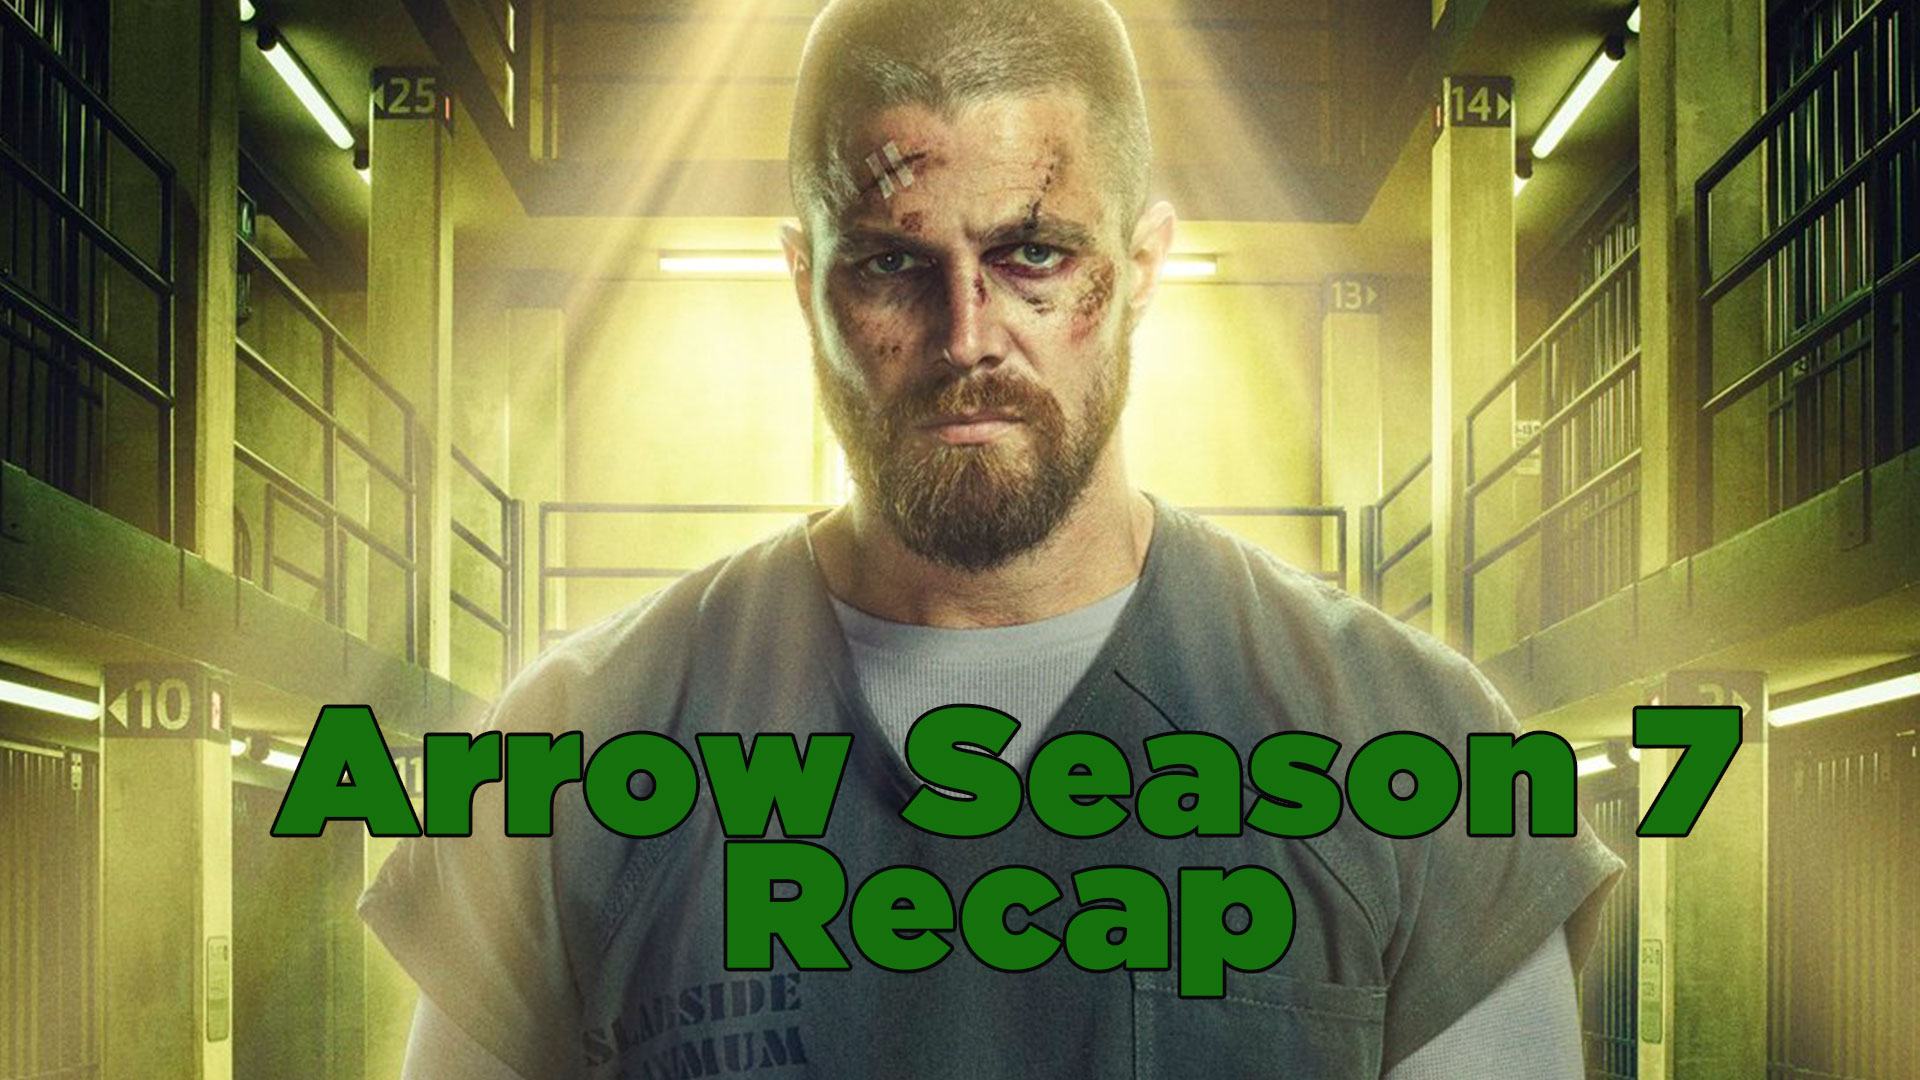 Arrow Season 7 Recap Everything You Need To Know Major